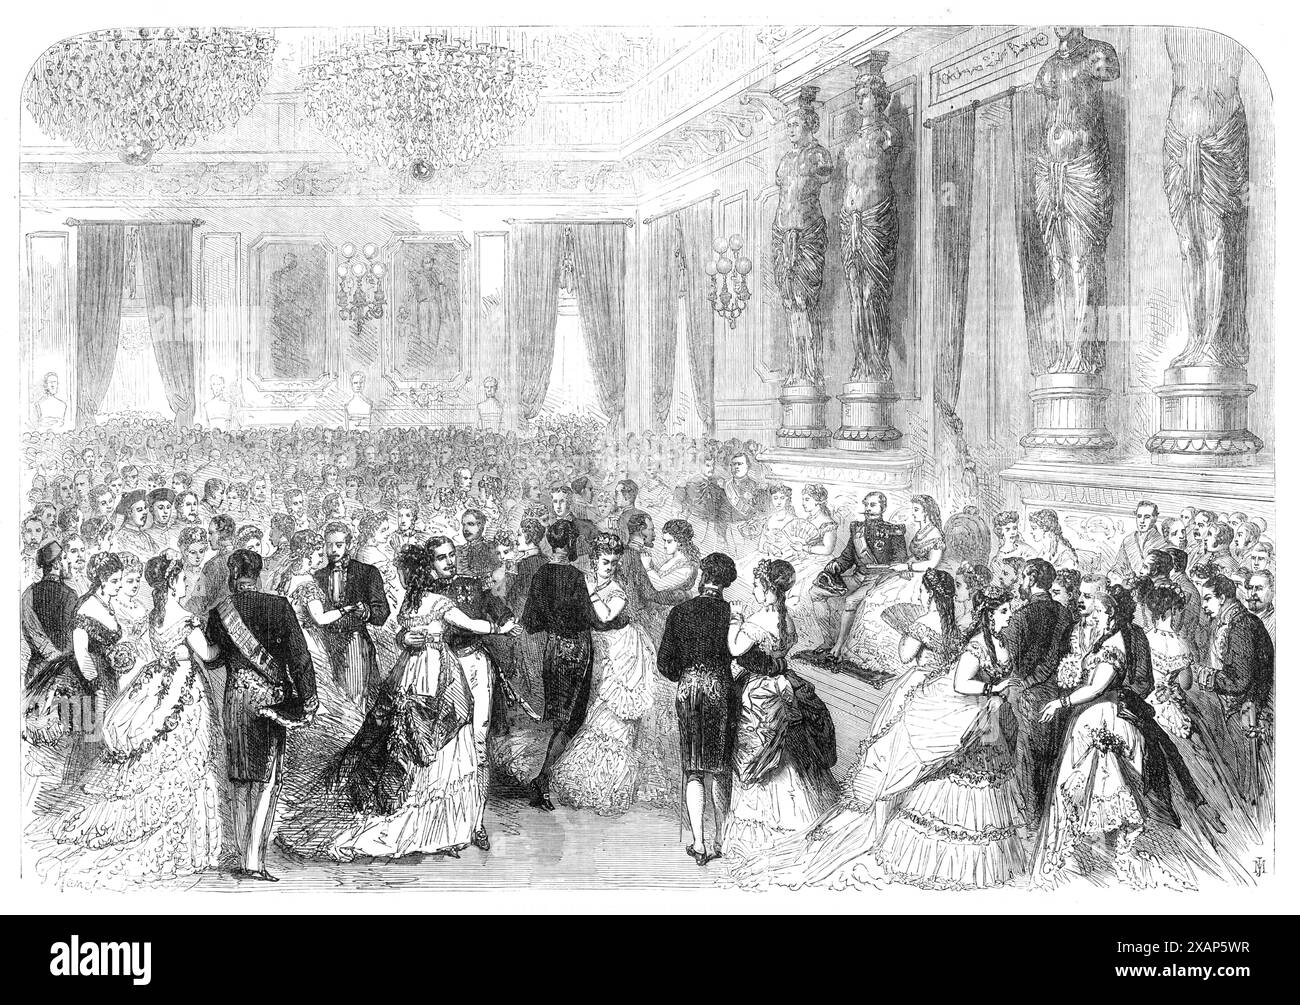 Staatsball in den Tuilerien [Palast in Paris]: Darbietungen an Kaiser und Kaiserin vor dem Ball, 1869. "Der Ball... findet in der Salle des Marechaux statt, einem riesigen Salon... dieser Saal ist der größte in den Tuilerien, aber trotz seiner Größe ist die Menge oft so groß, dass das Tanzen unmöglich wird. und die Anführer mit ihren Hälsen, die von Ketten aus massy-Silber umgeben sind, tun ständig ihr Möglichstes, um einen freien Raum zu erhalten... die Quadrille der Ehre, die Personen, an denen der Kaiser immer teilnimmt, ist usua Stockfoto